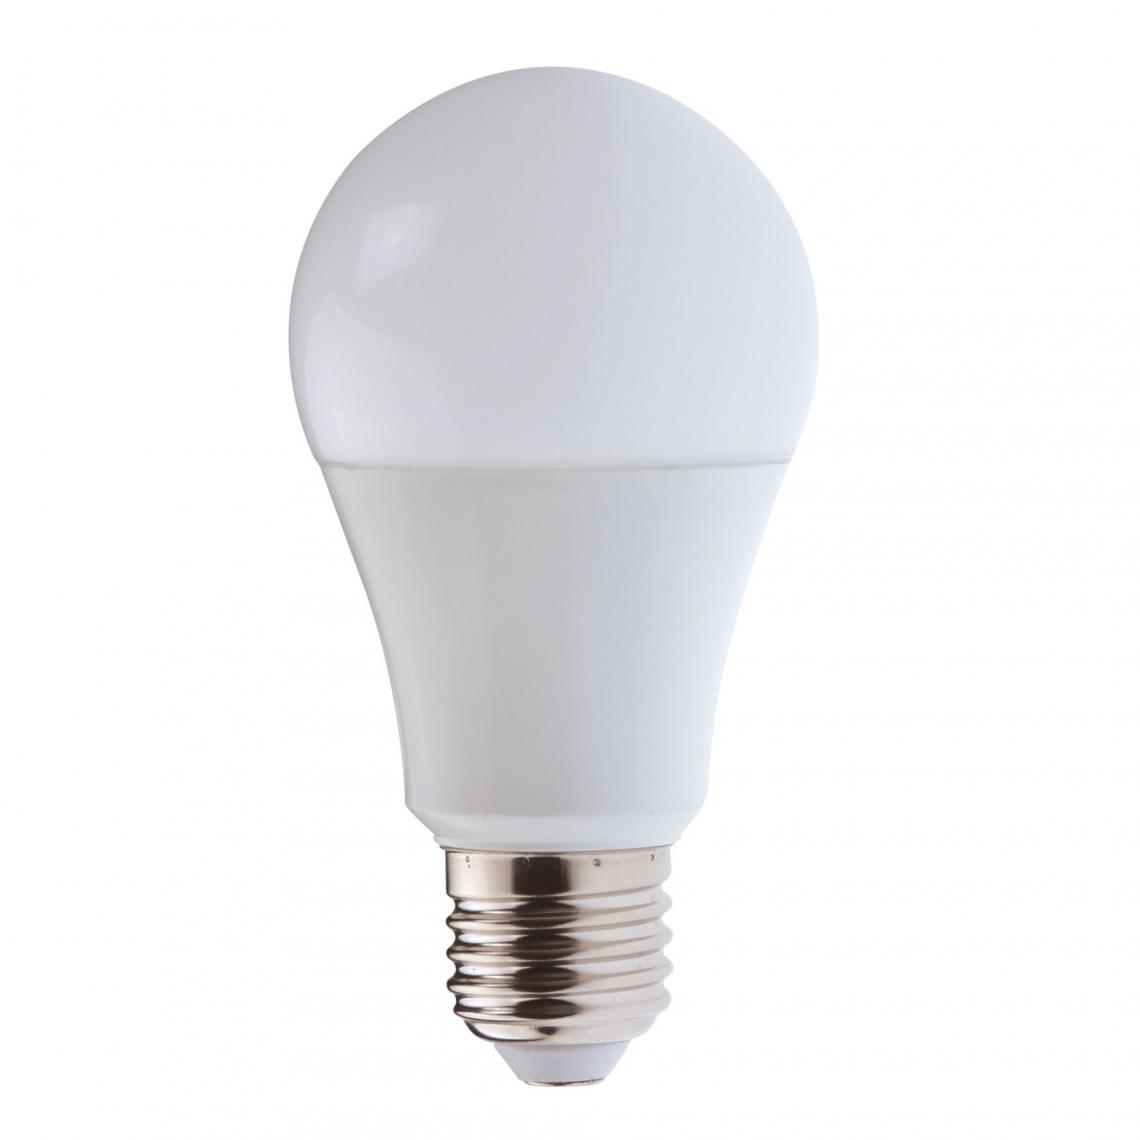 Velamp - Ampoule LED SMD, ST26, 3W / 200lm, culot E14, 3000K. Spécial Réfrigérateur - Ampoules LED